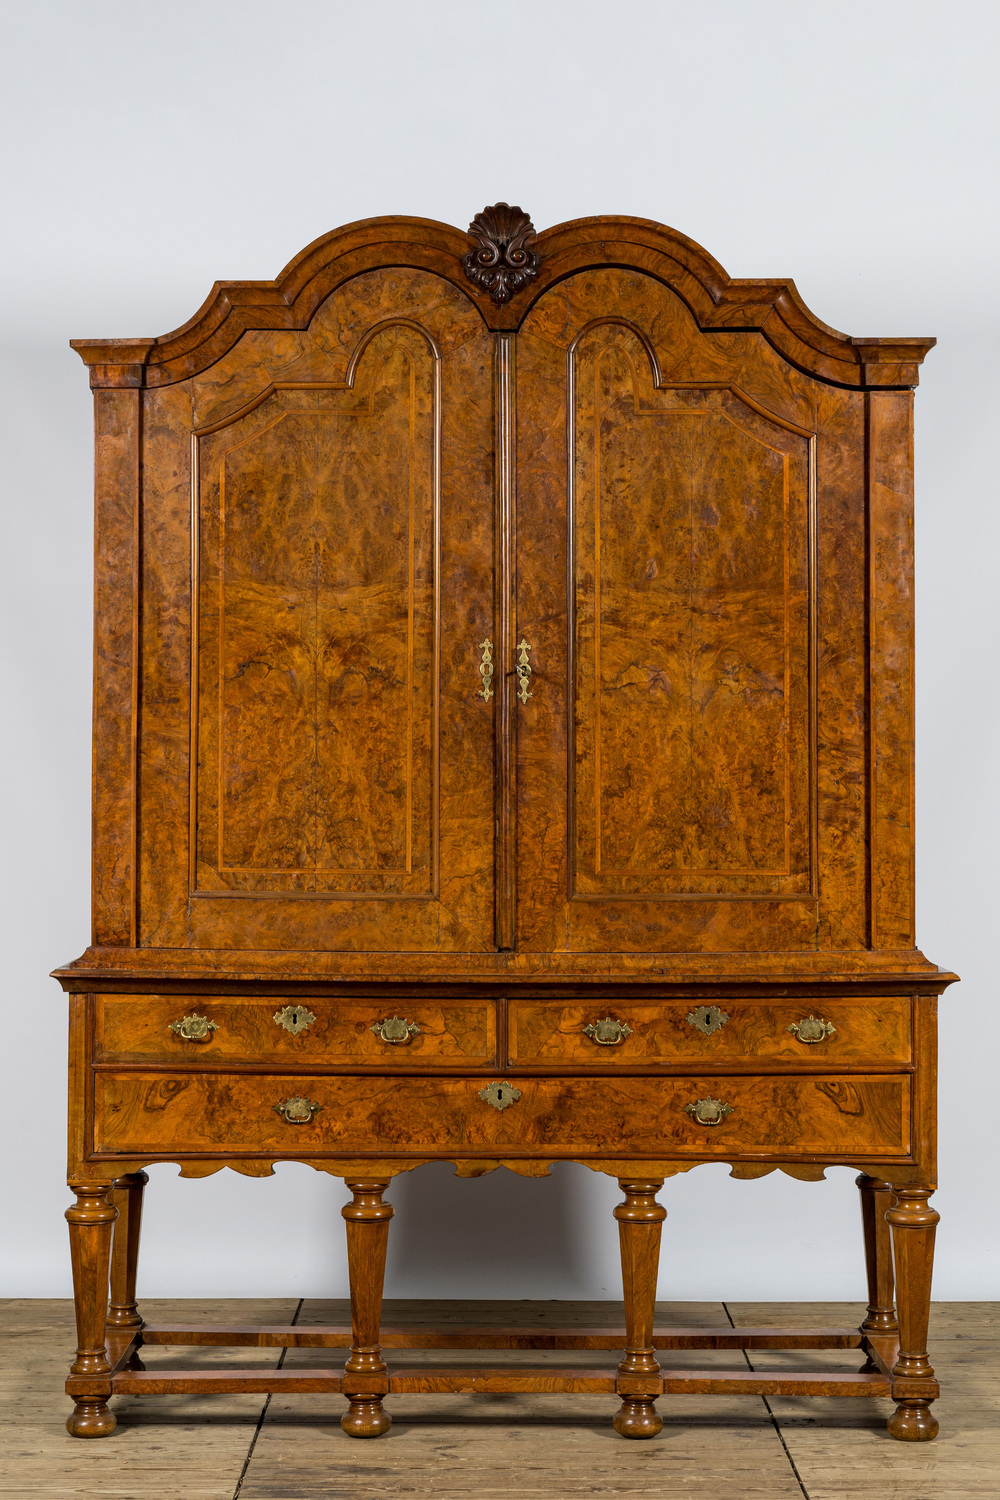 A Dutch baroque burl wood veneered two-door cabinet, 18th C.